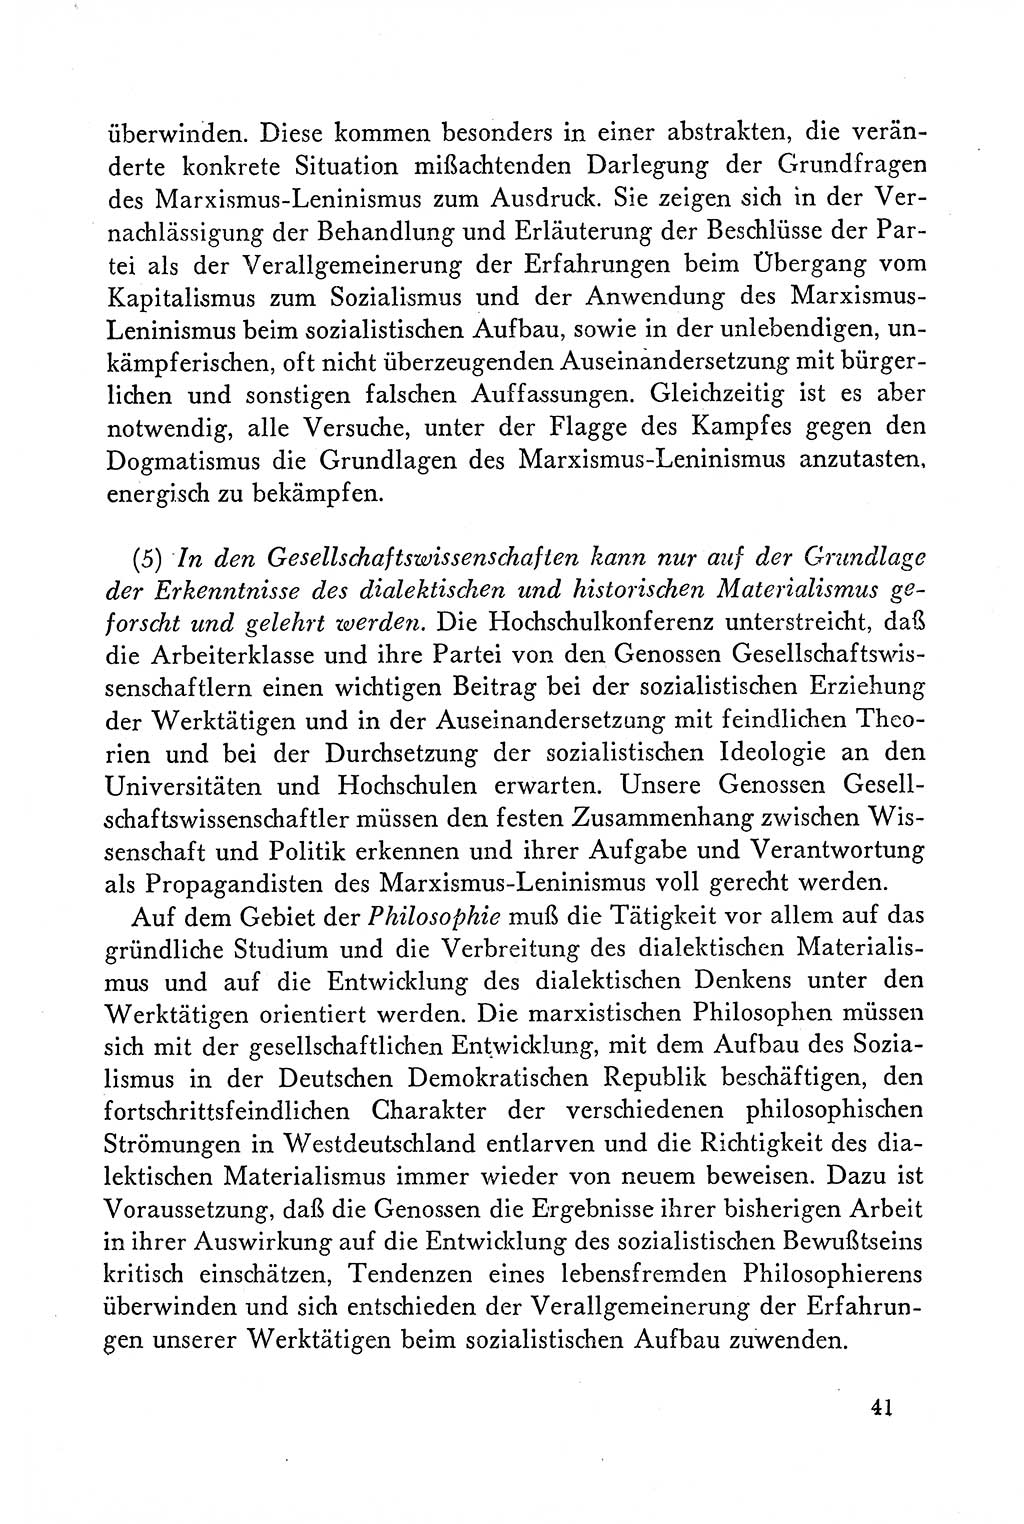 Dokumente der Sozialistischen Einheitspartei Deutschlands (SED) [Deutsche Demokratische Republik (DDR)] 1958-1959, Seite 41 (Dok. SED DDR 1958-1959, S. 41)